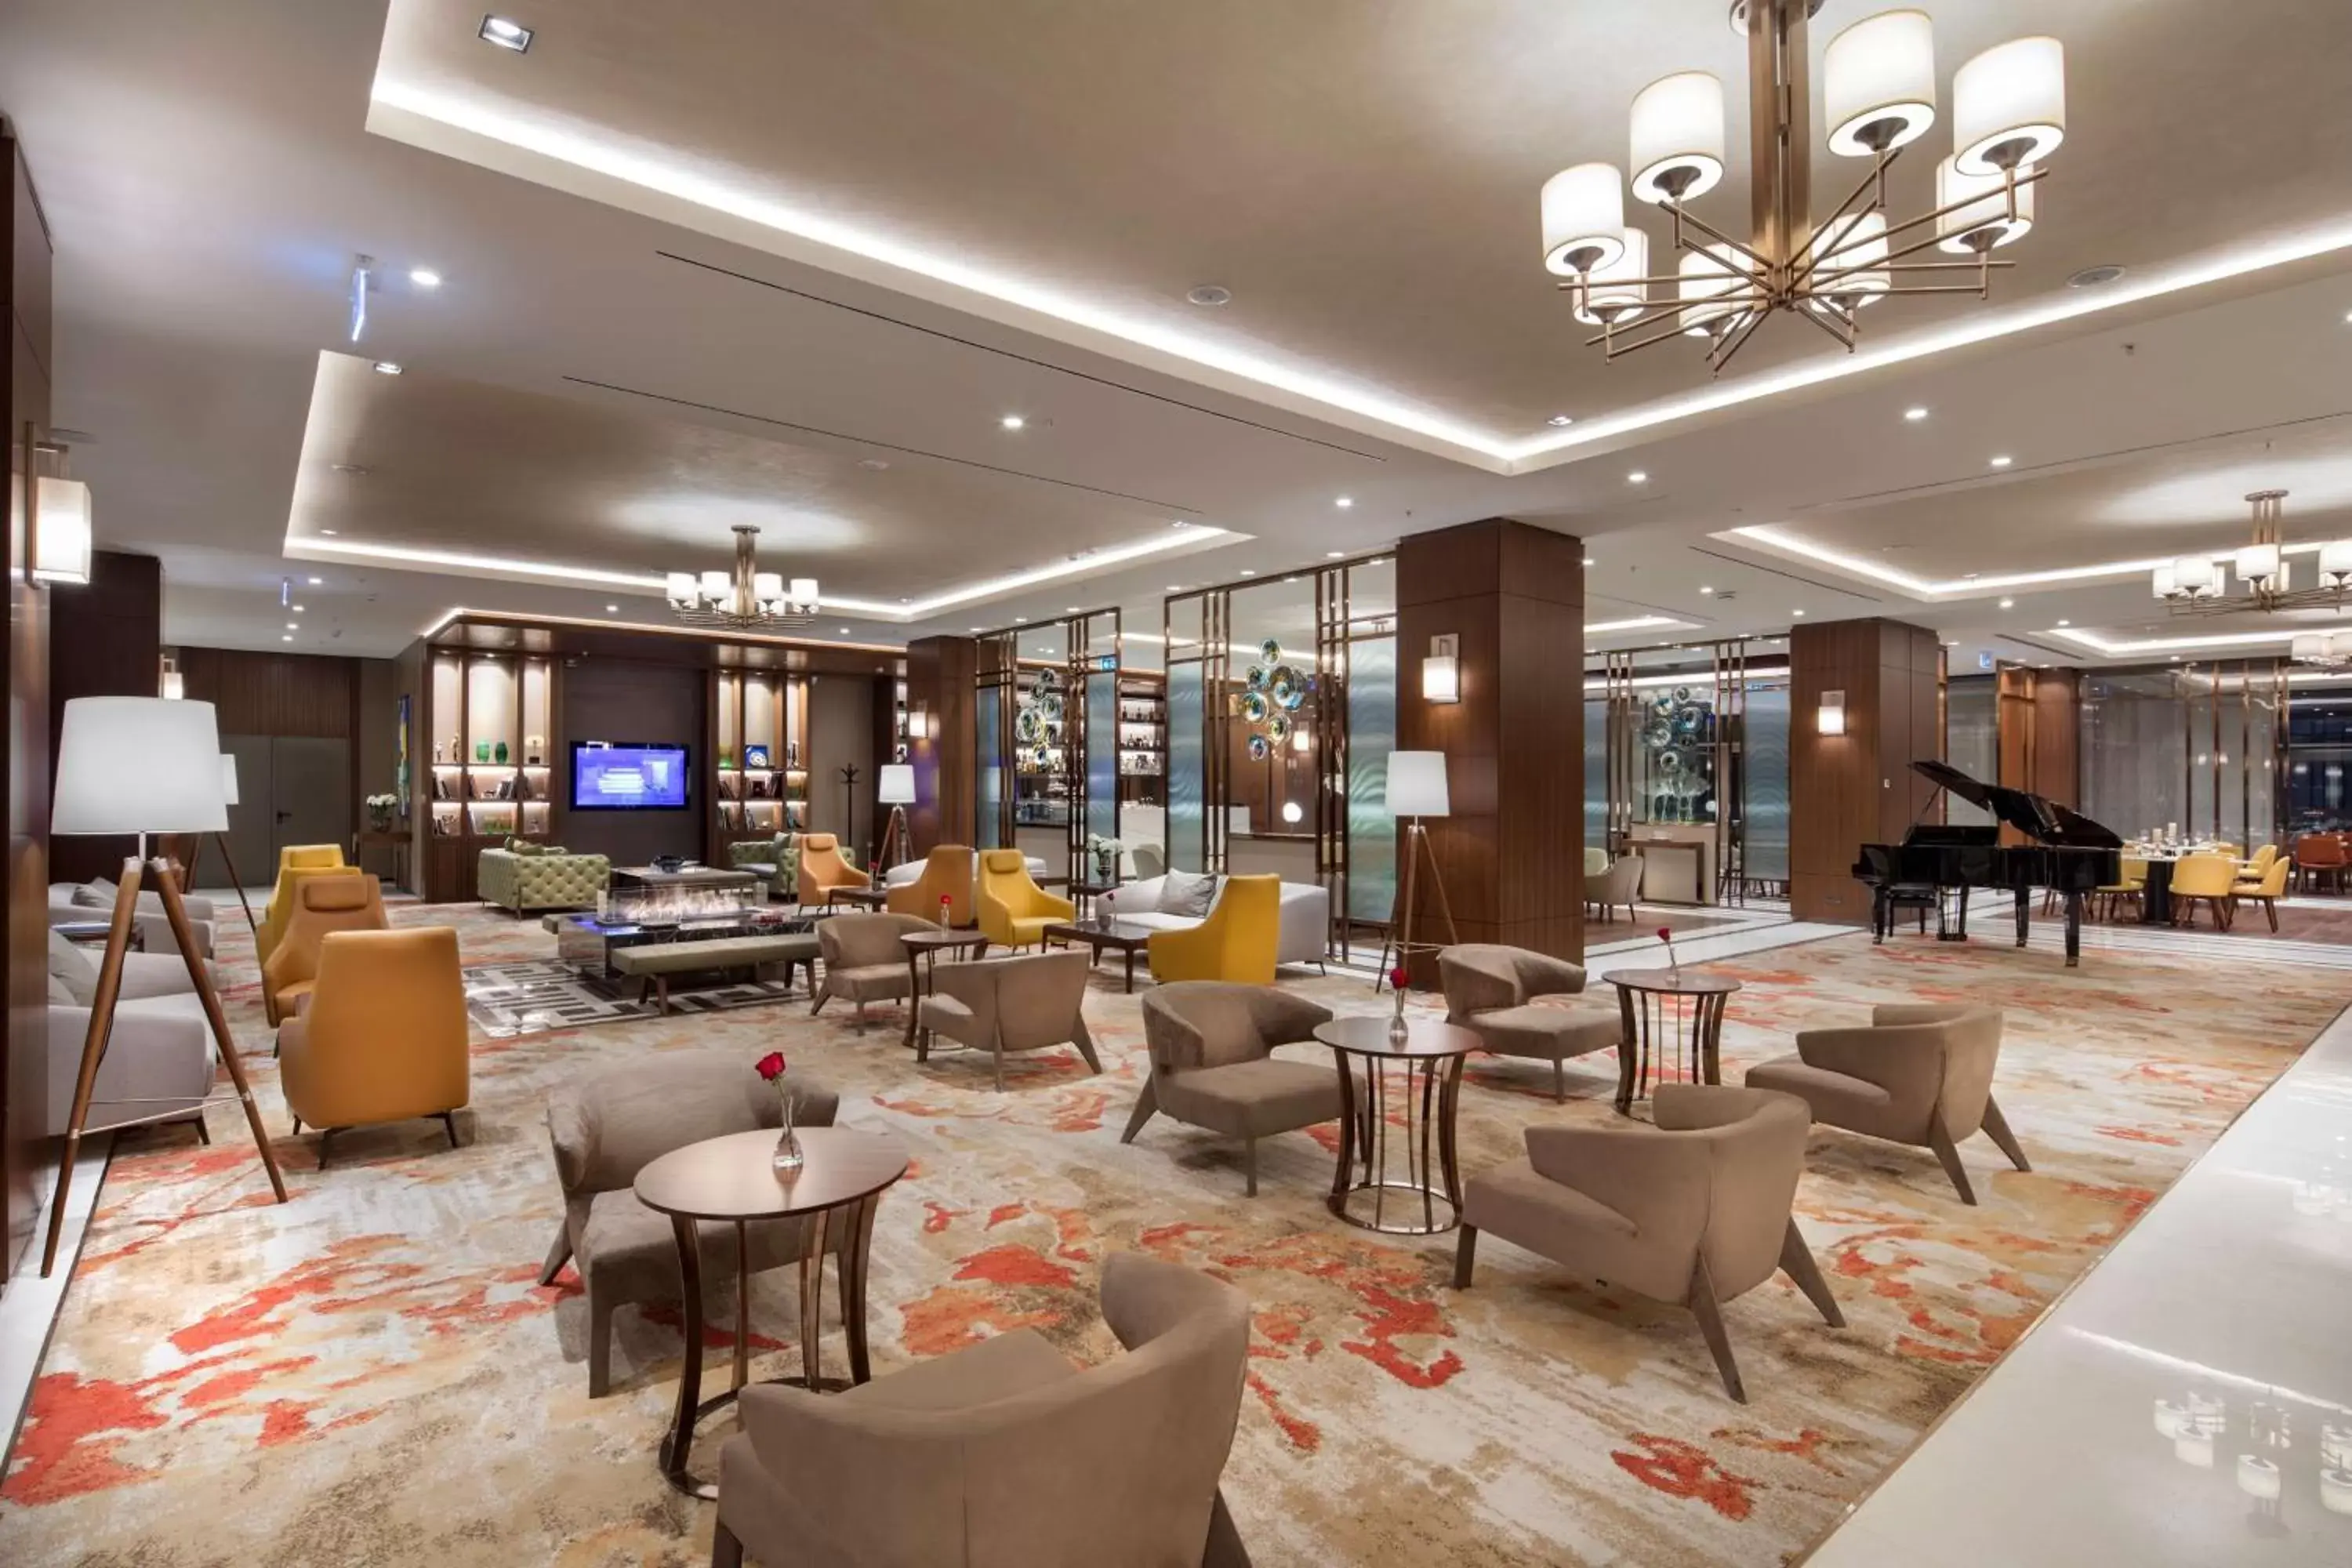 Lobby or reception in DoubleTree By Hilton Skopje